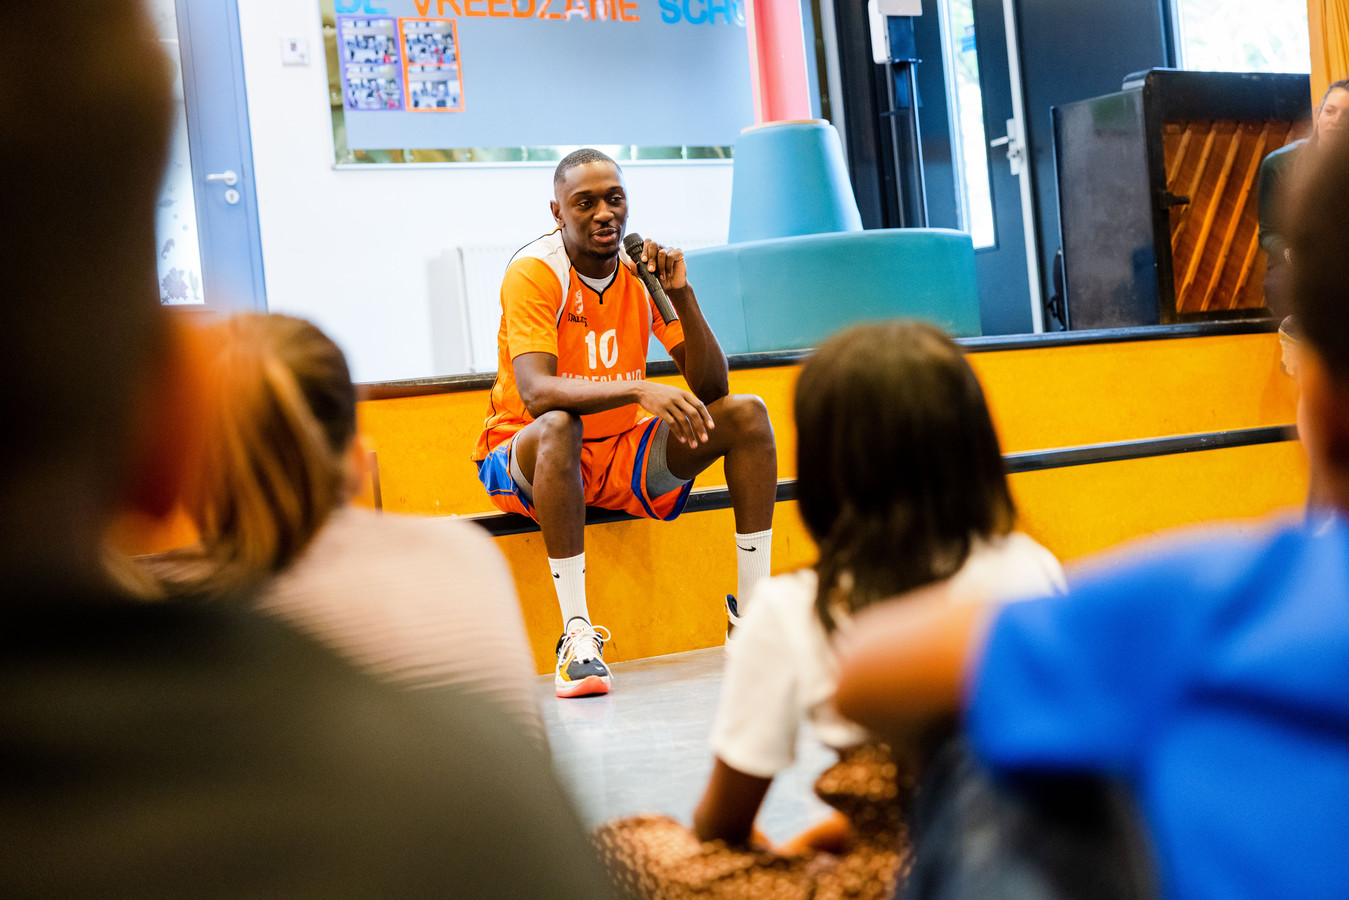 Profbasketballer Nené Kiameso, oud-leerling van De Vlashof, opent Try Out Sports. Hij vertelt de kinderen over hoe hij zo ver is gekomen in de sport.